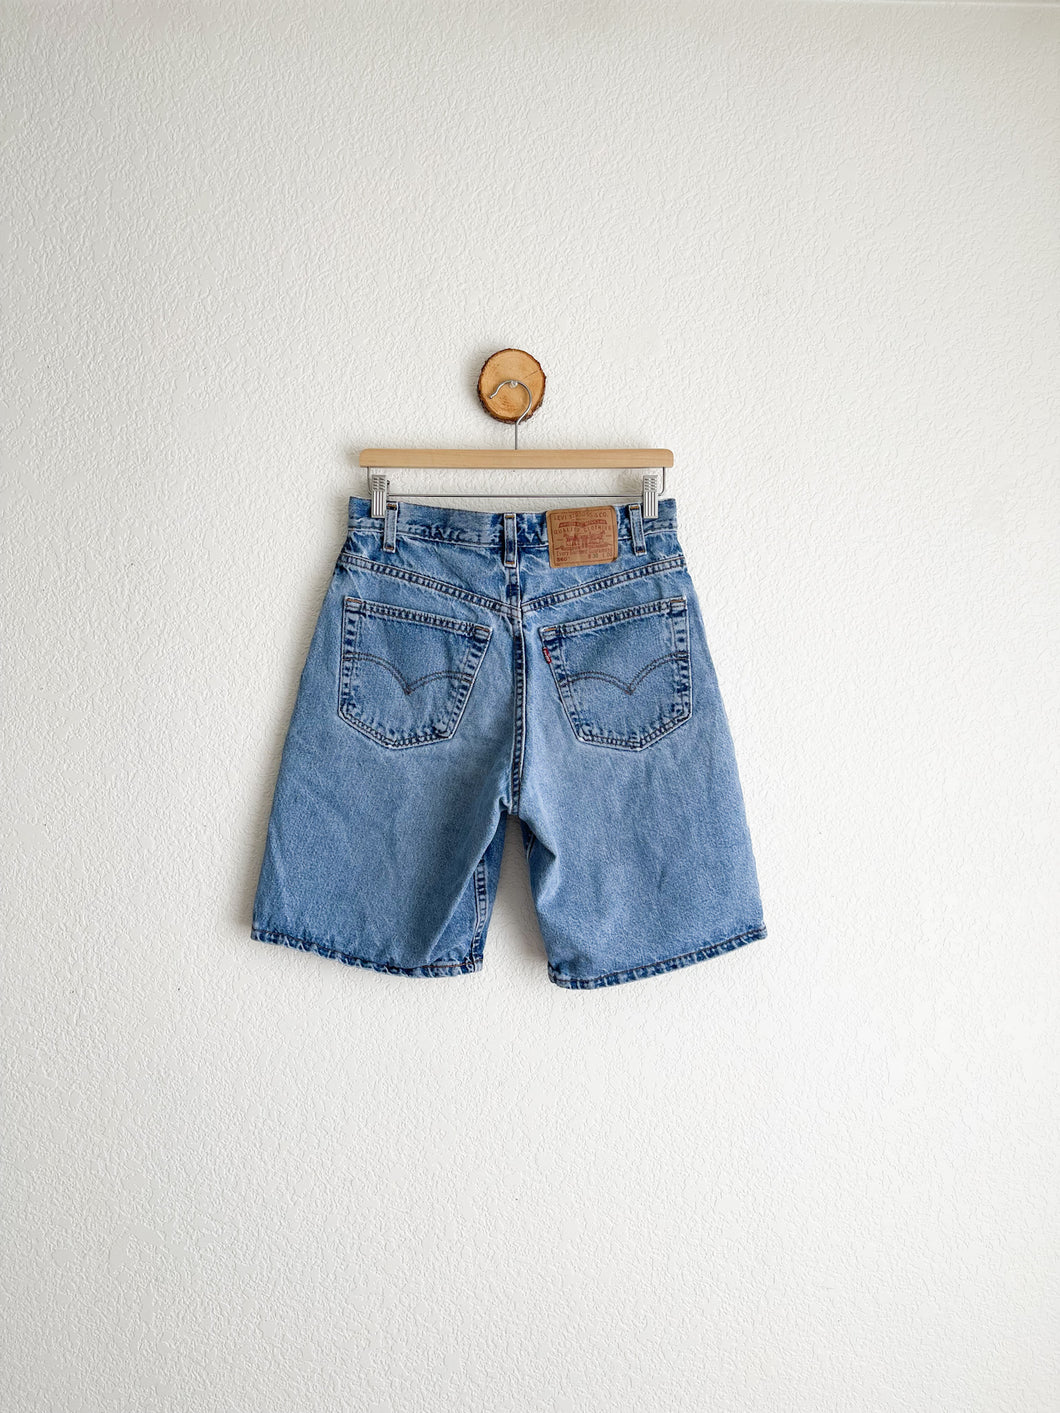 Vintage Levi's 560 Jean Shorts - 29.5